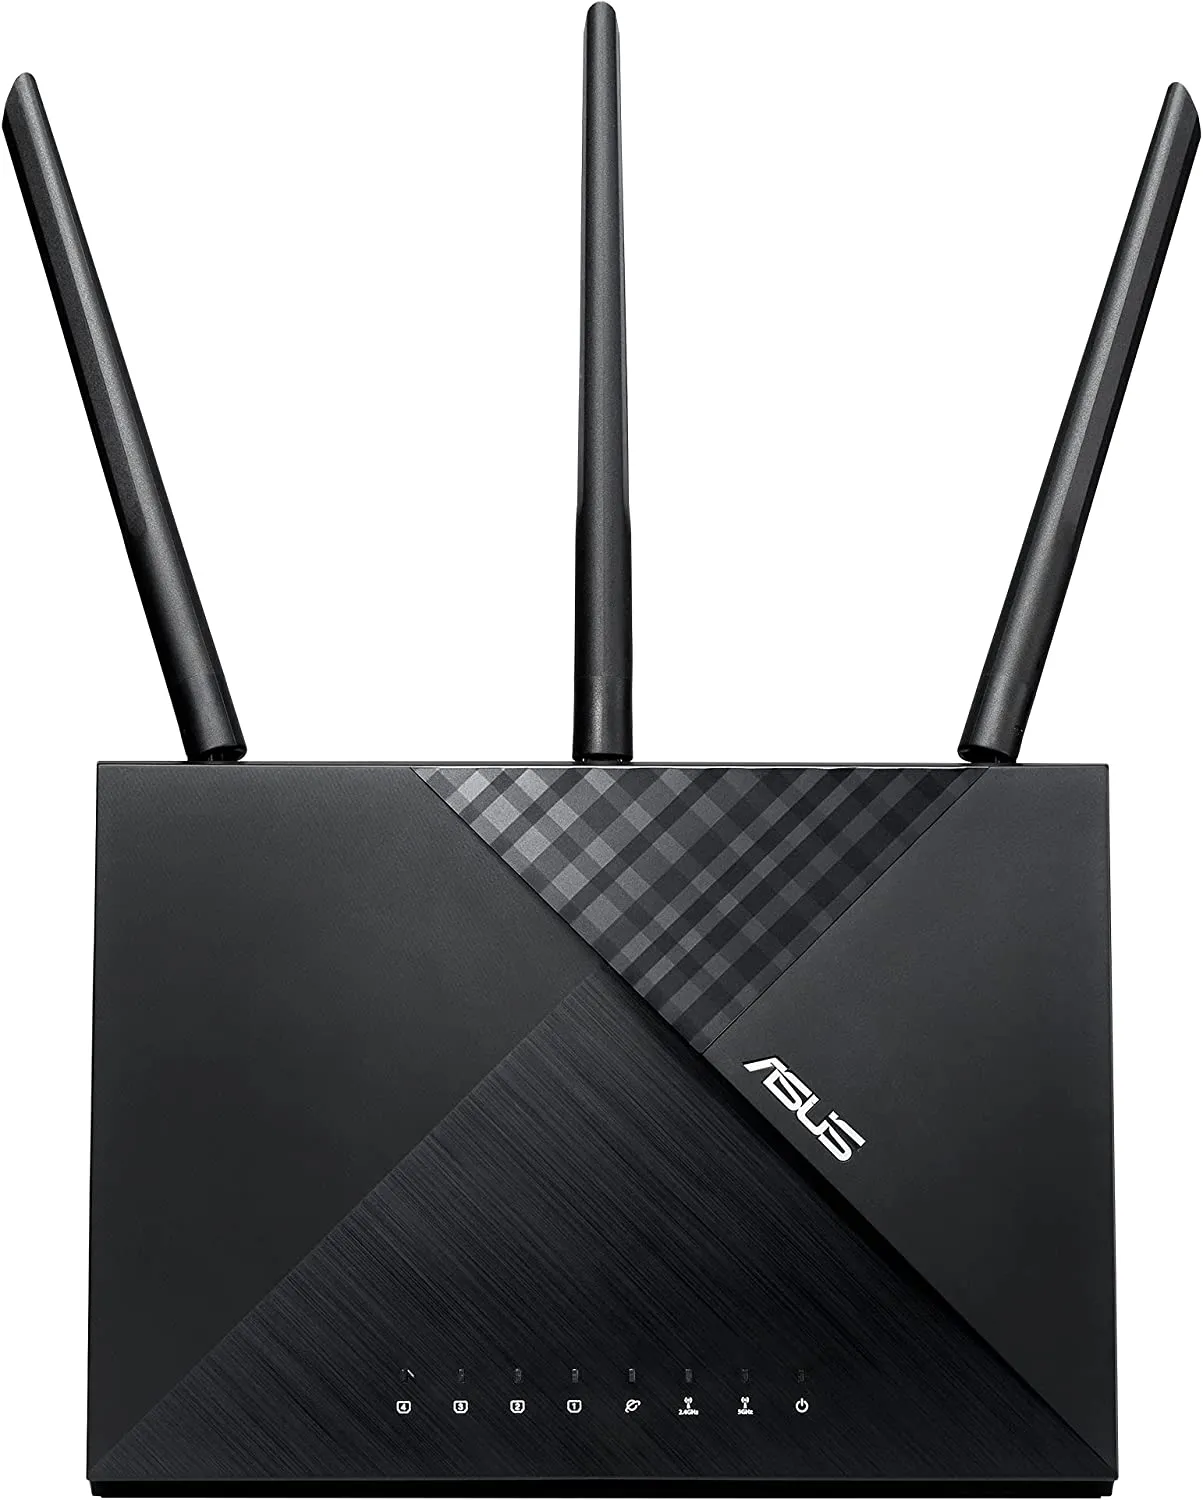 ASUS AC1750 (RT-ACRH18) Wi-Fi路由器